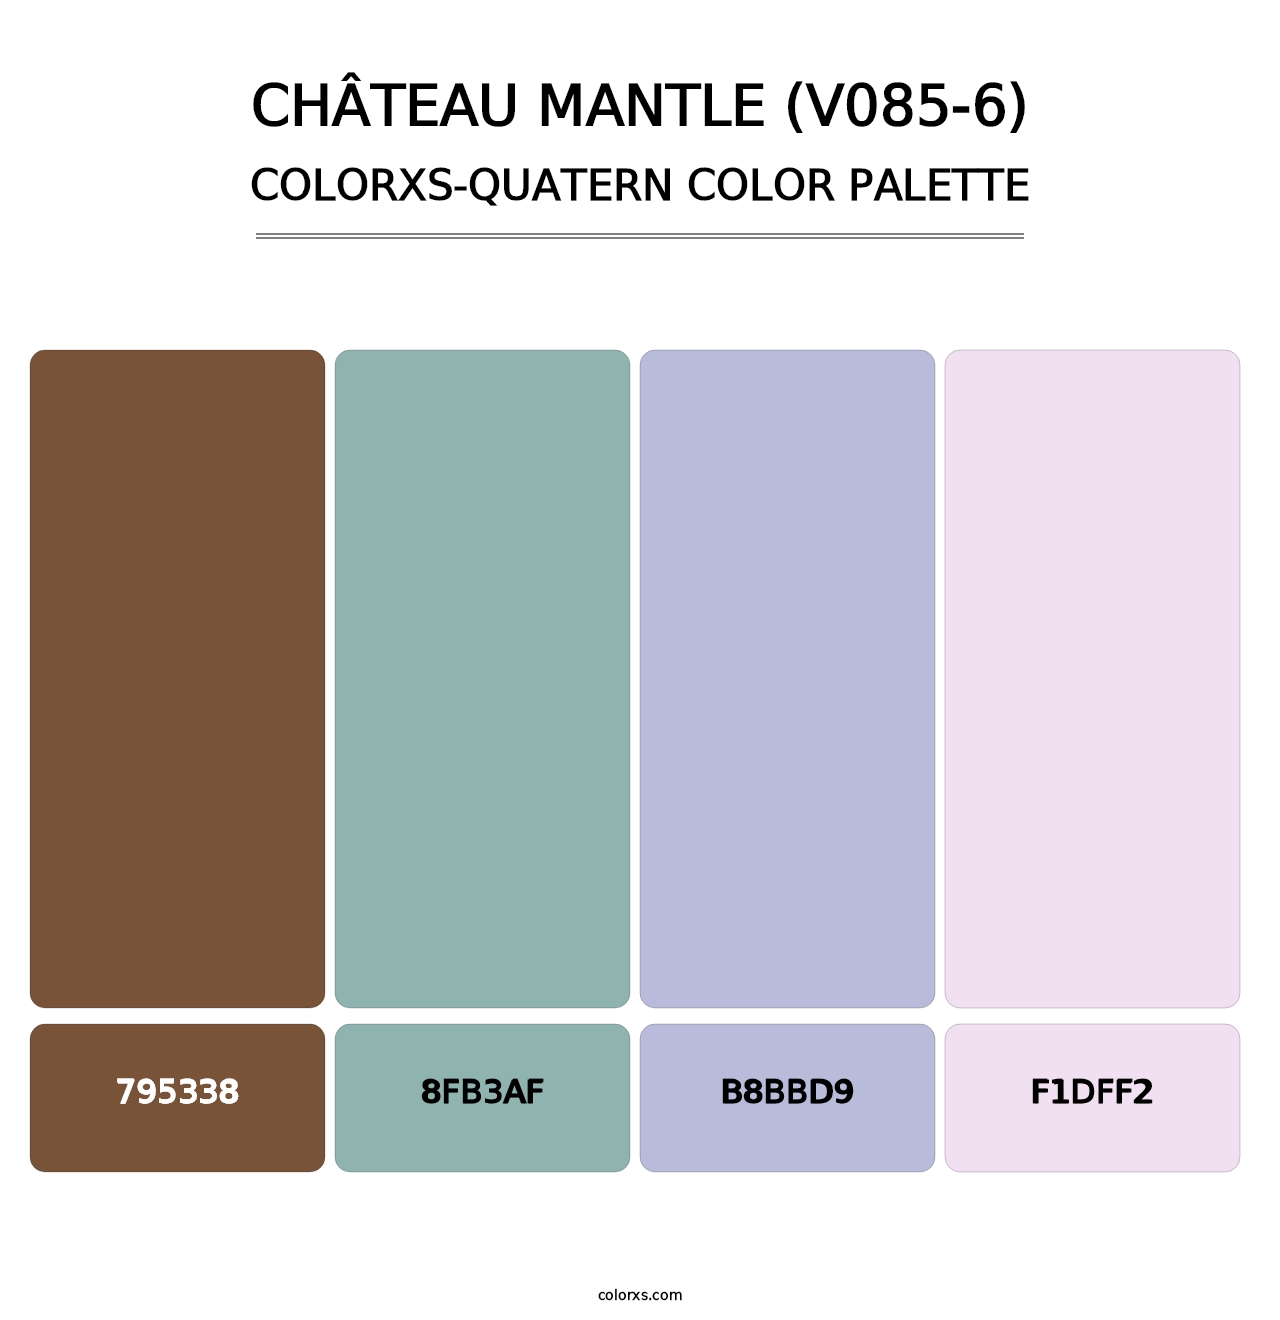 Château Mantle (V085-6) - Colorxs Quatern Palette